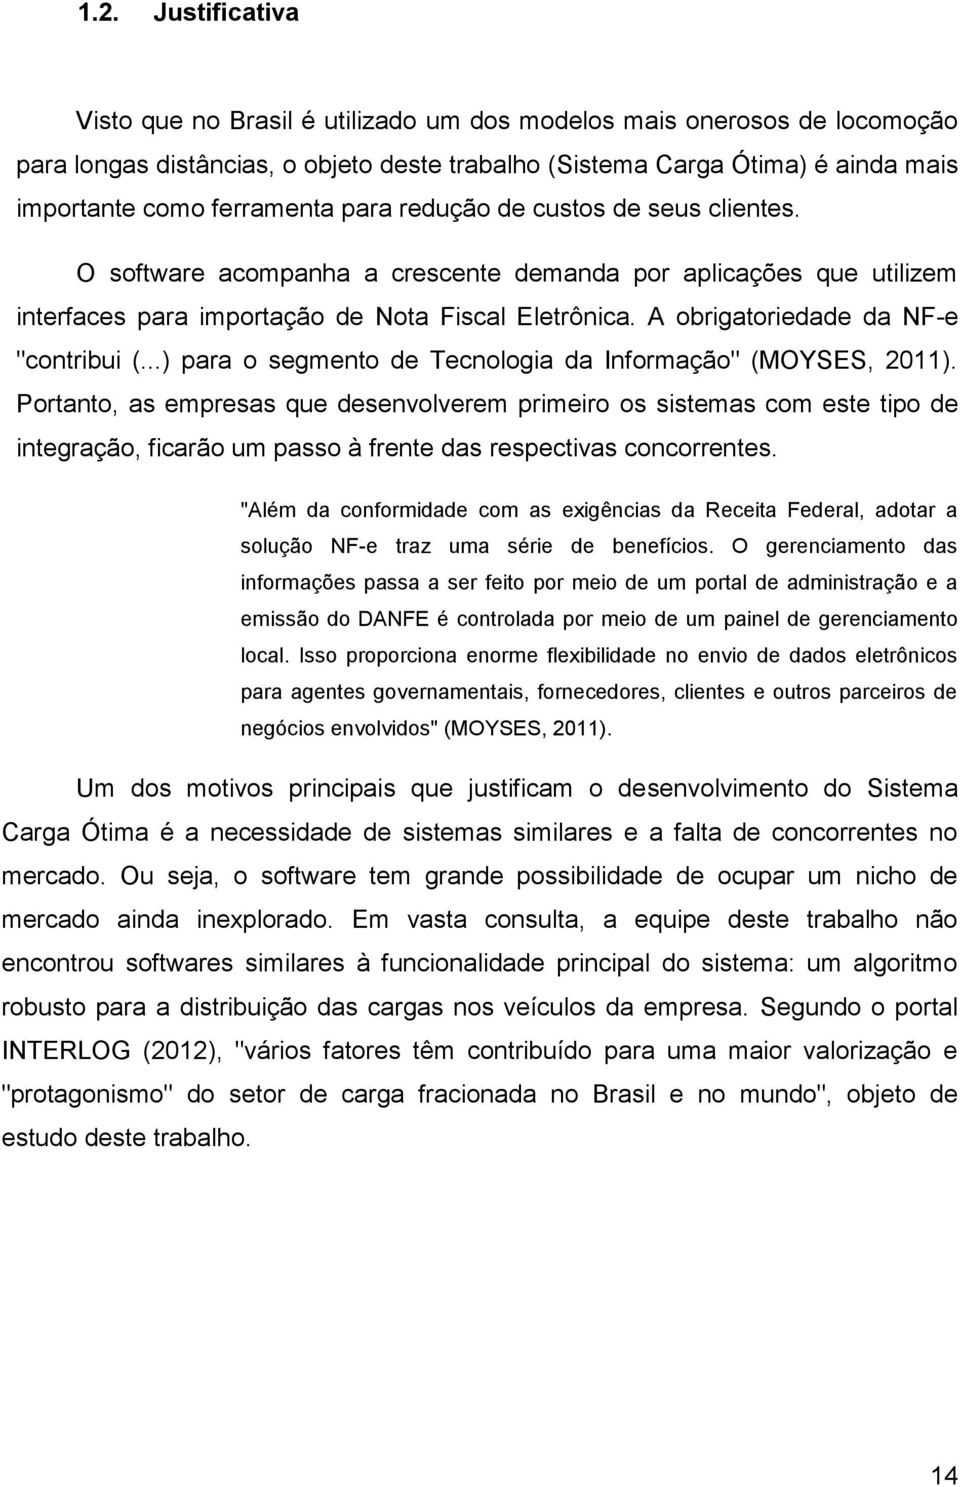 A obrigatoriedade da NF-e "contribui (...) para o segmento de Tecnologia da Informação" (MOYSES, 2011).